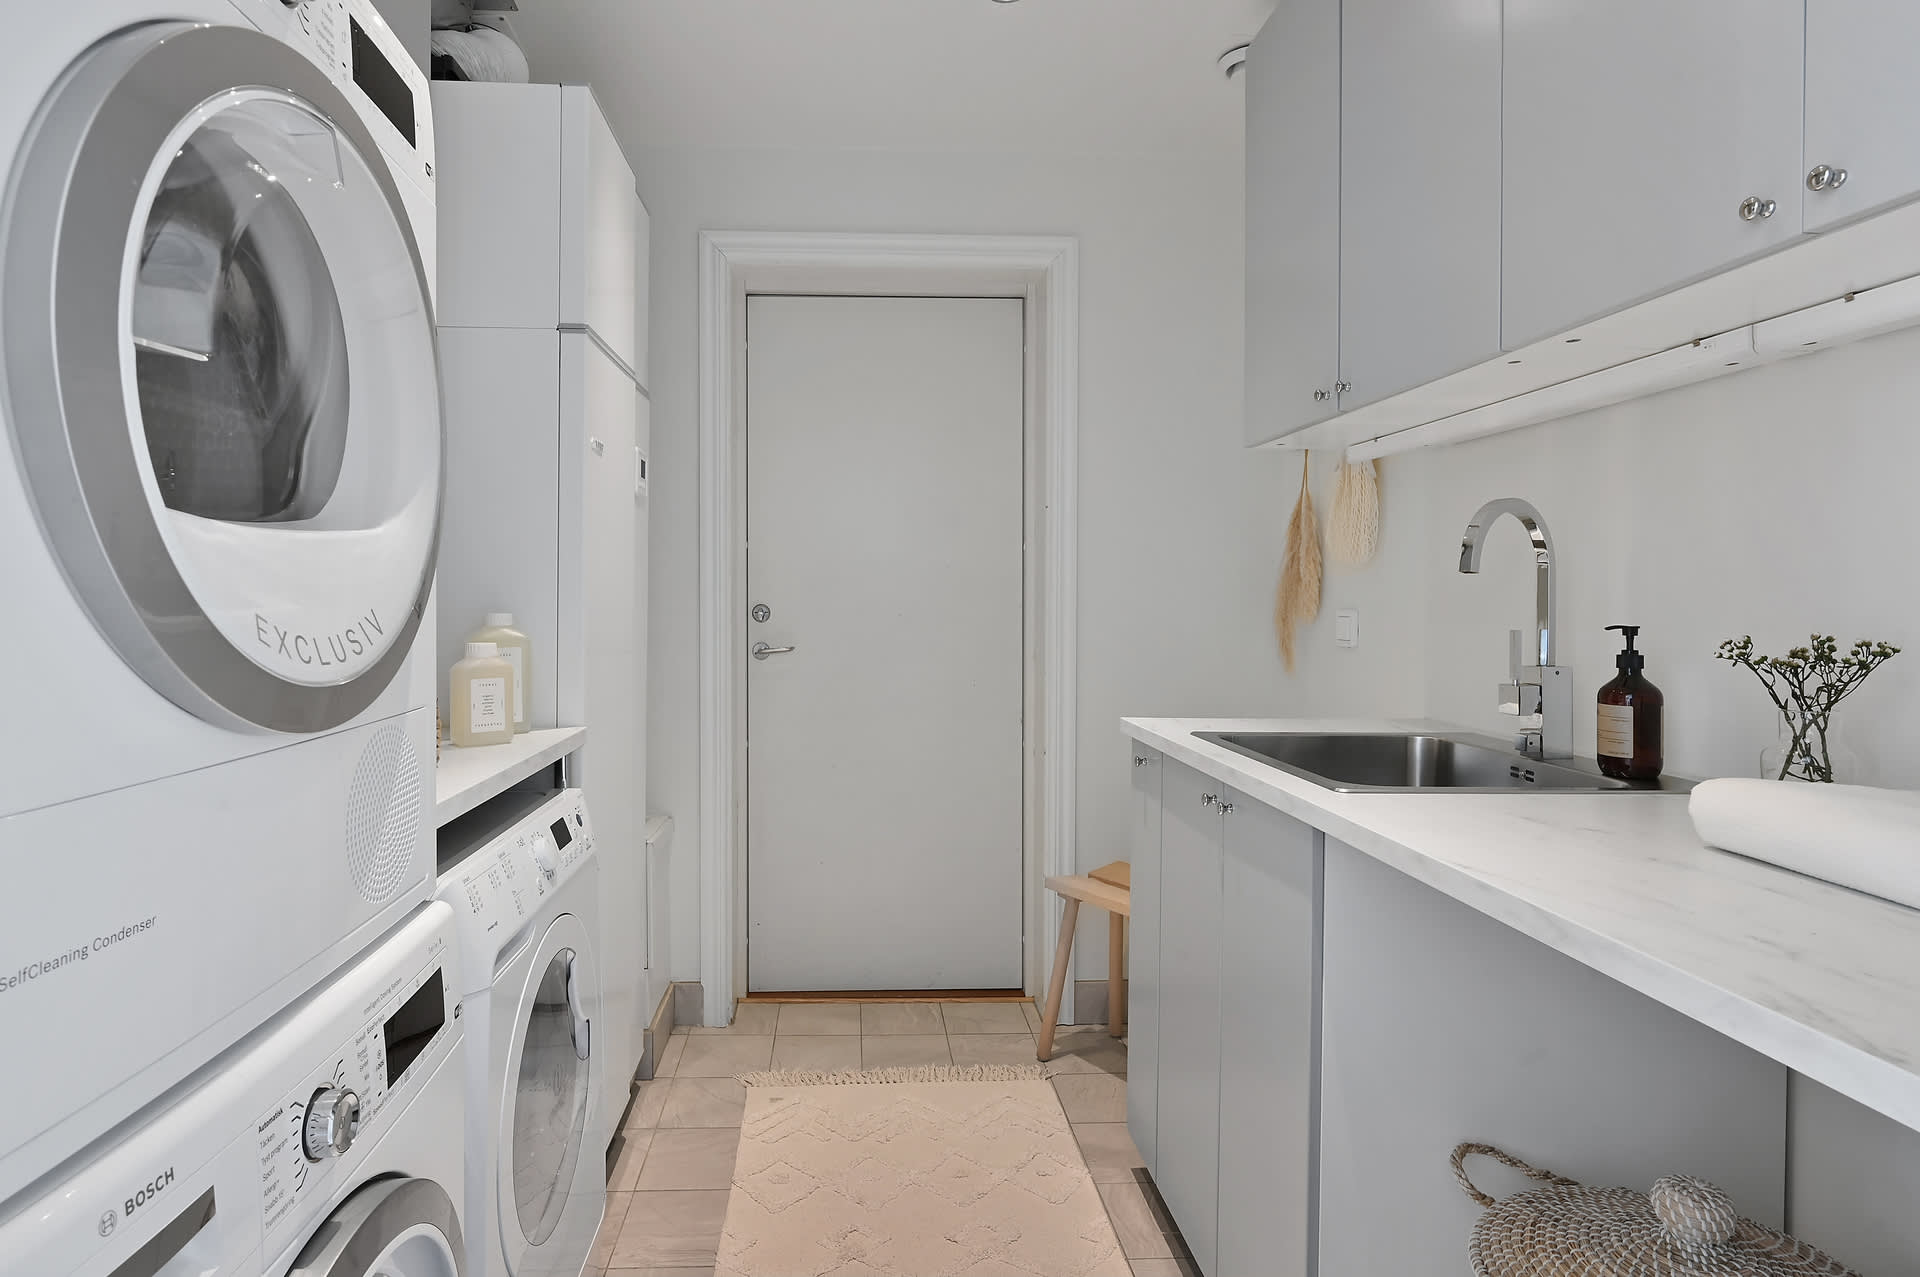 Tvättstugan totalrenoverades år 2019, i välplanerad lösning. Dubbla tvättmaskiner vill alla barnfamiljer ha!
Dörr mot det varmisolerade garaget